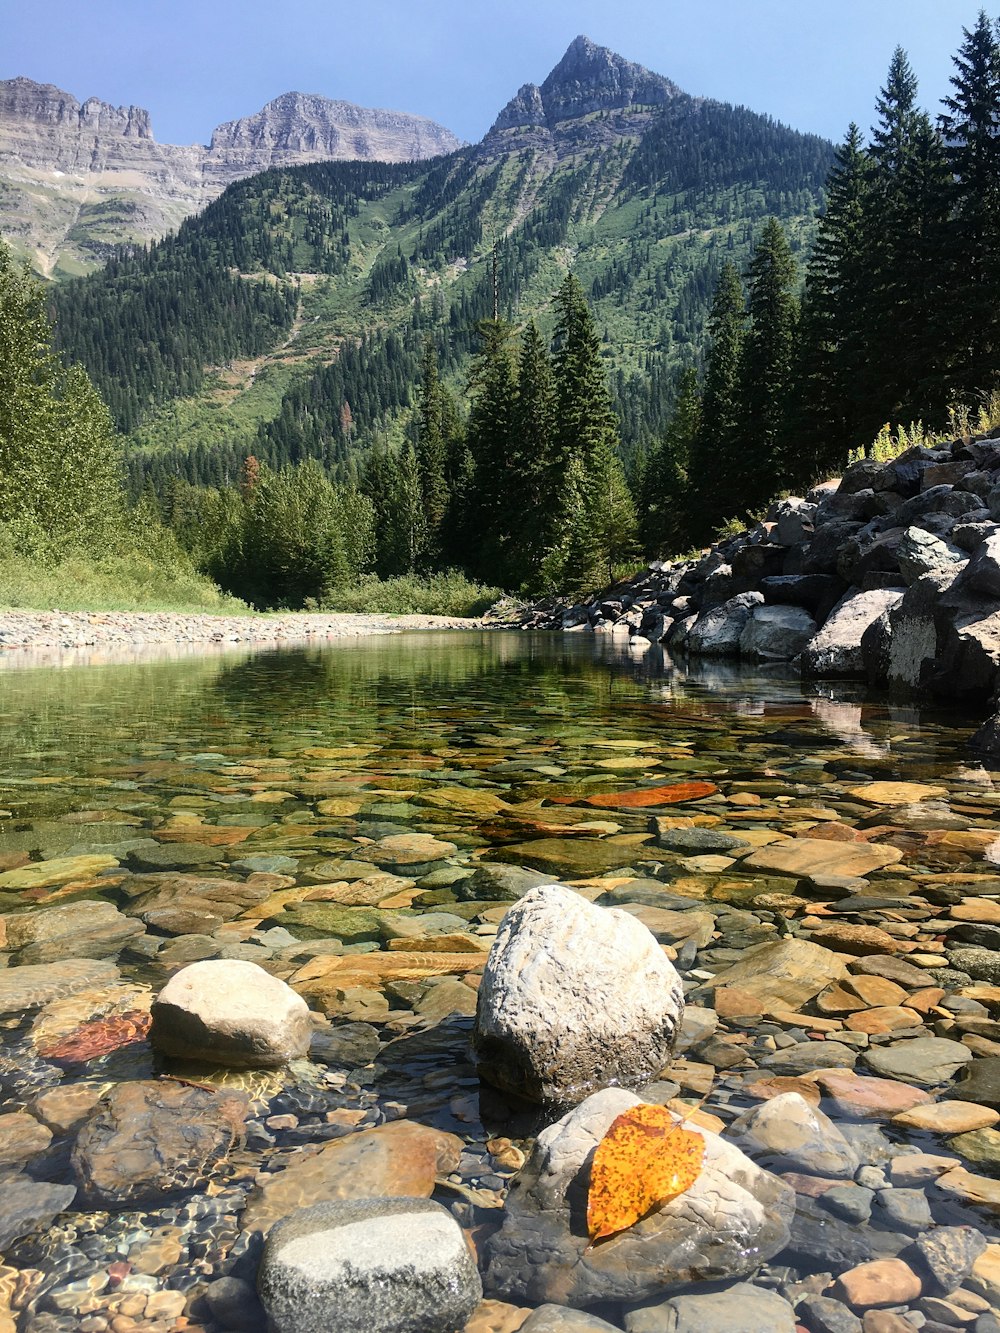 rocce grigie sul fiume vicino agli alberi verdi e alla montagna durante il giorno